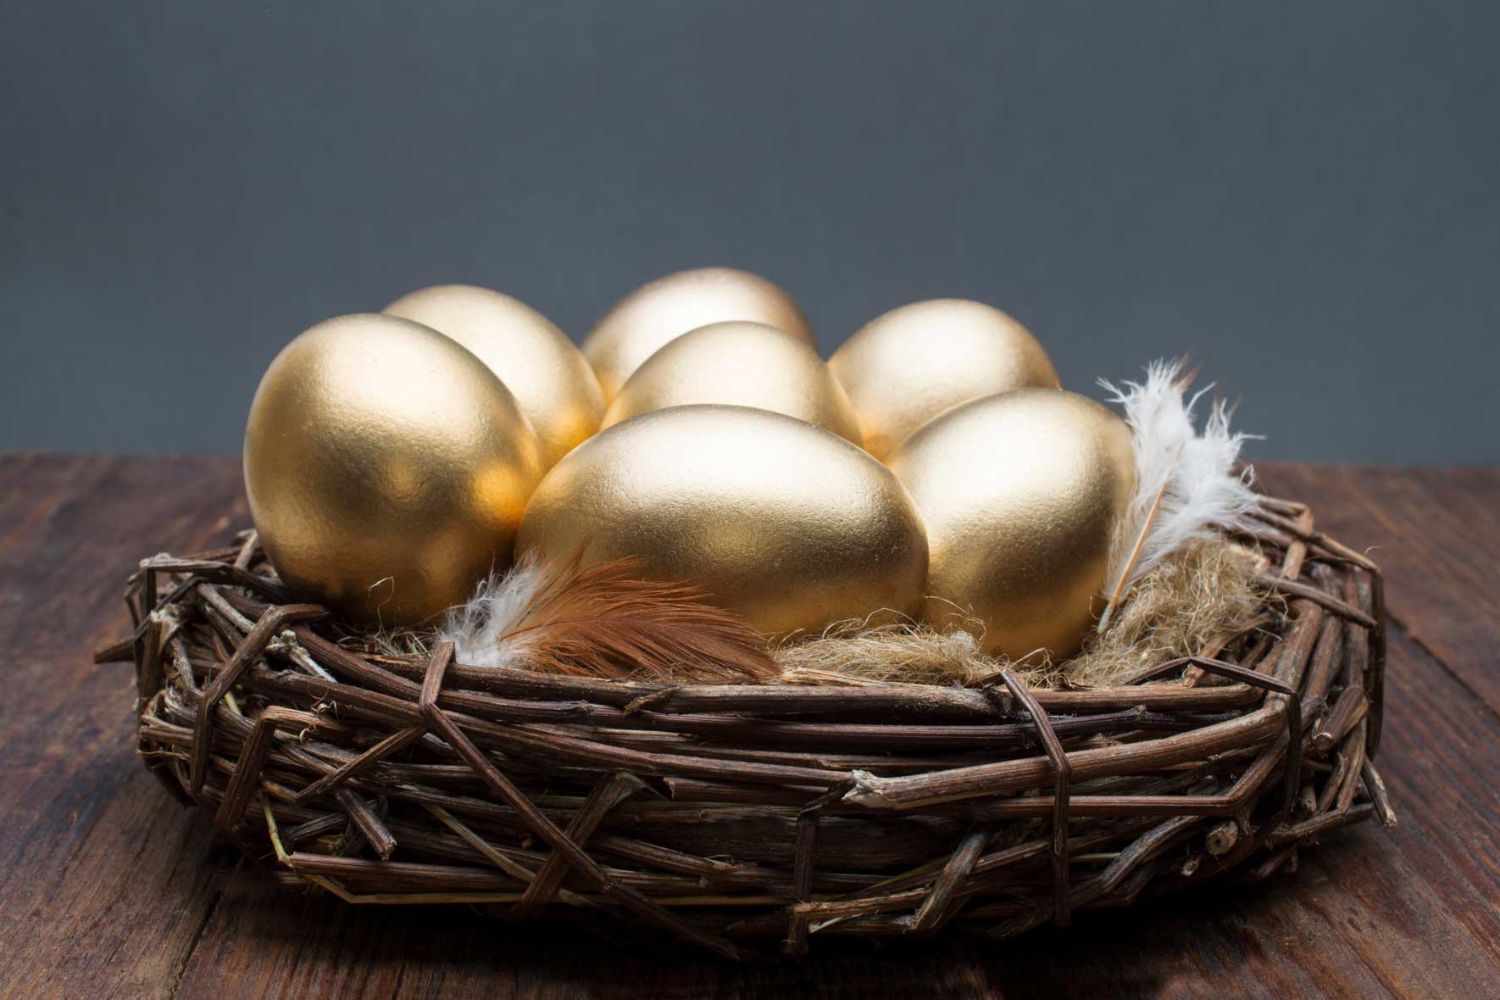 golden eggs in nest